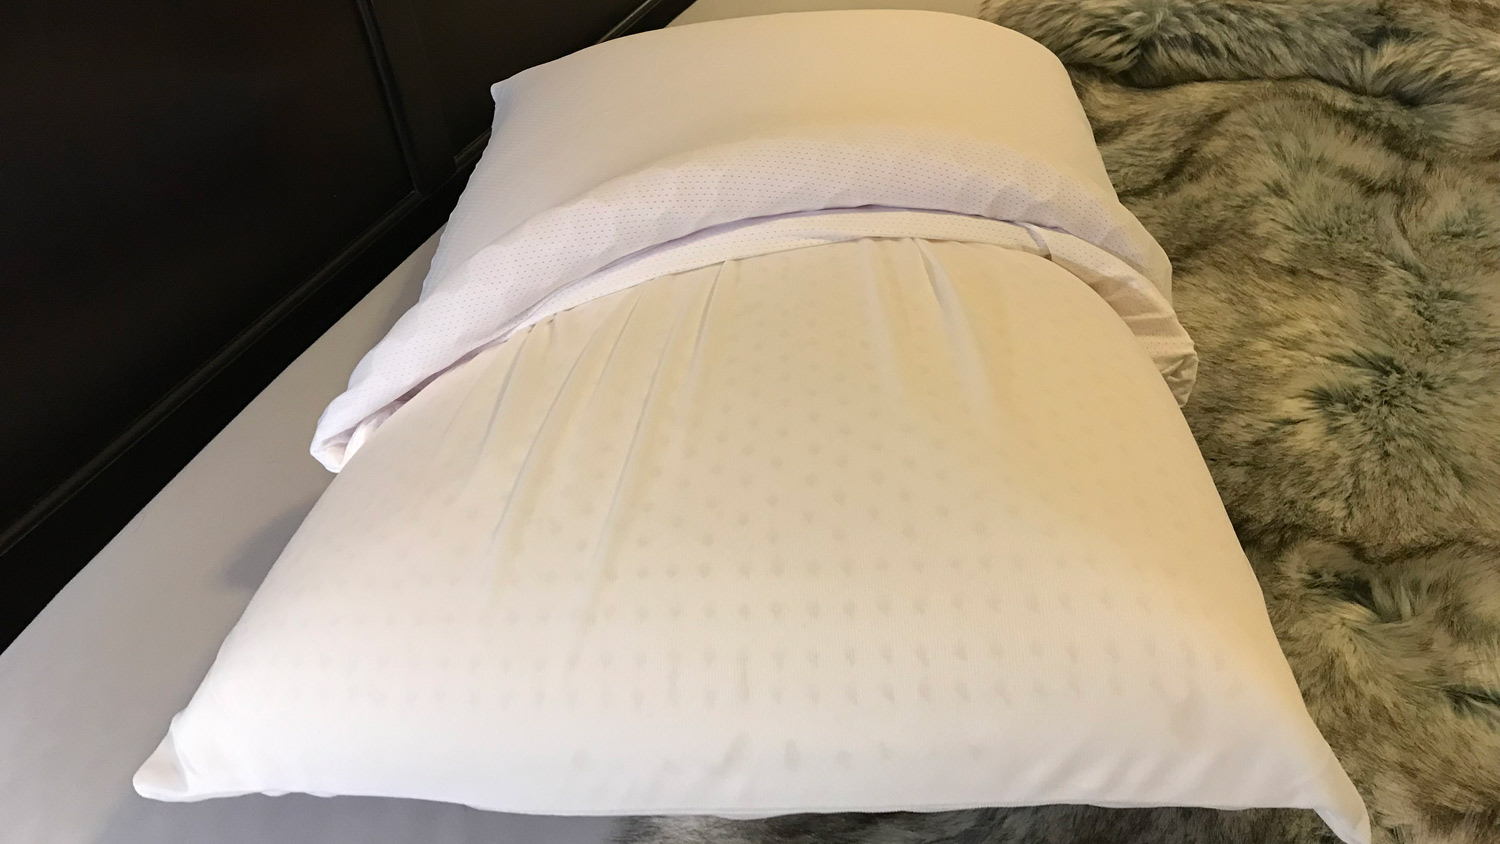 O Purple Harmony Pillow com a capa parcialmente removida, mostrando o núcleo de látex